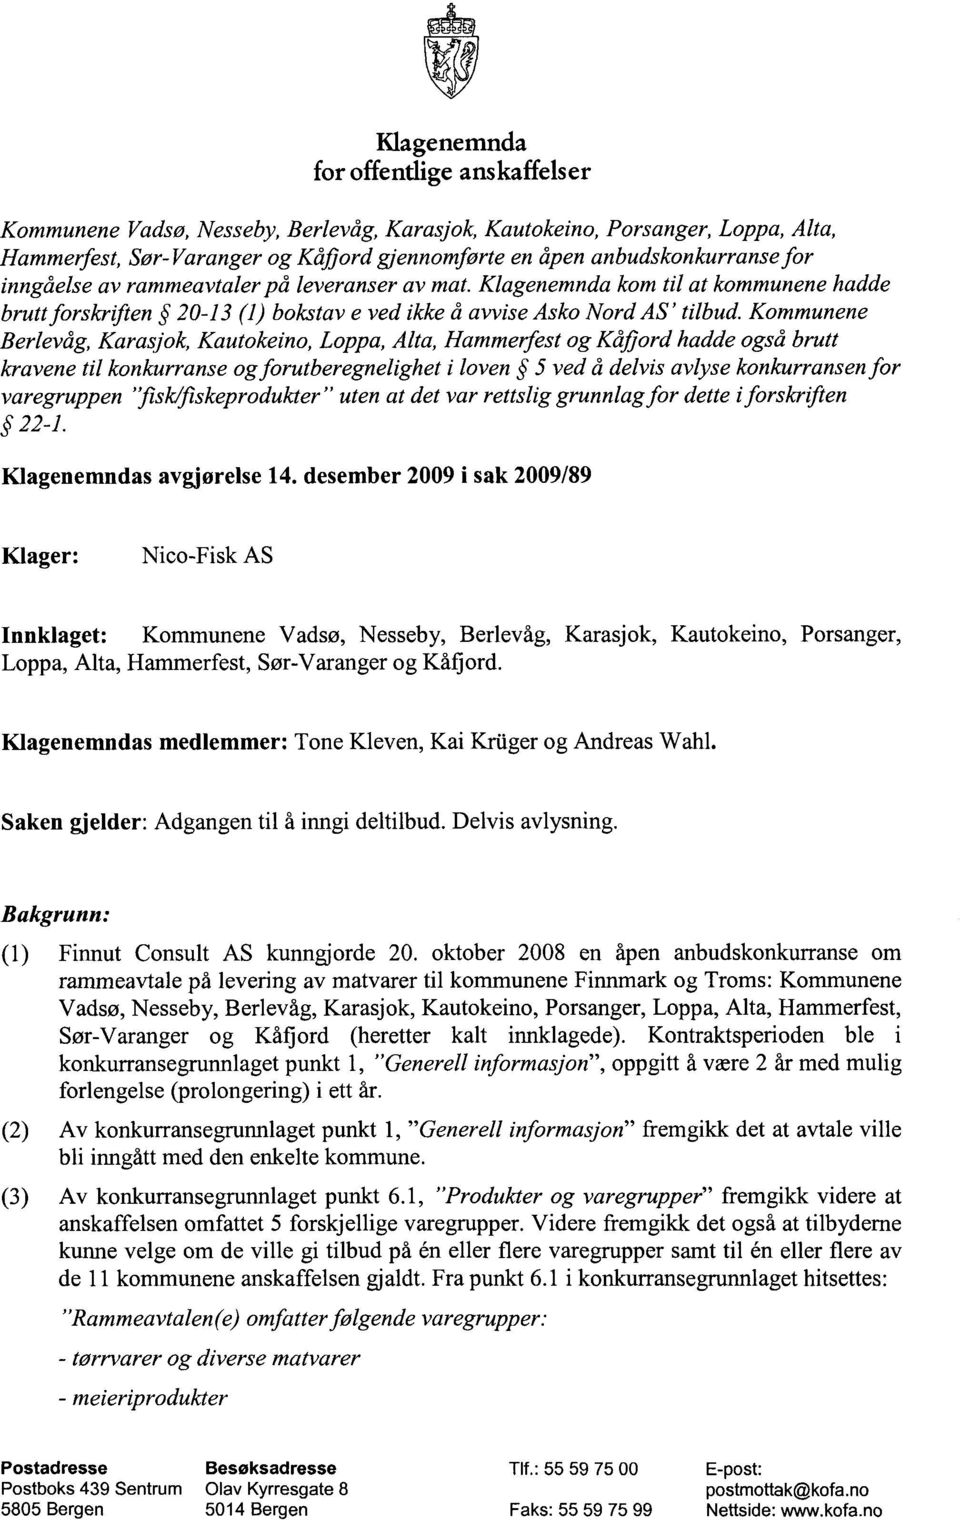 Kommunene Berlevåg, Karasjok, Kautokeino, Loppa, Alta, Hammerfest og Kåfjord hadde også brutt kravene til konkurranse og forutberegnelighet i loven 5 ved å delvis avlyse konkurransen for varegruppen